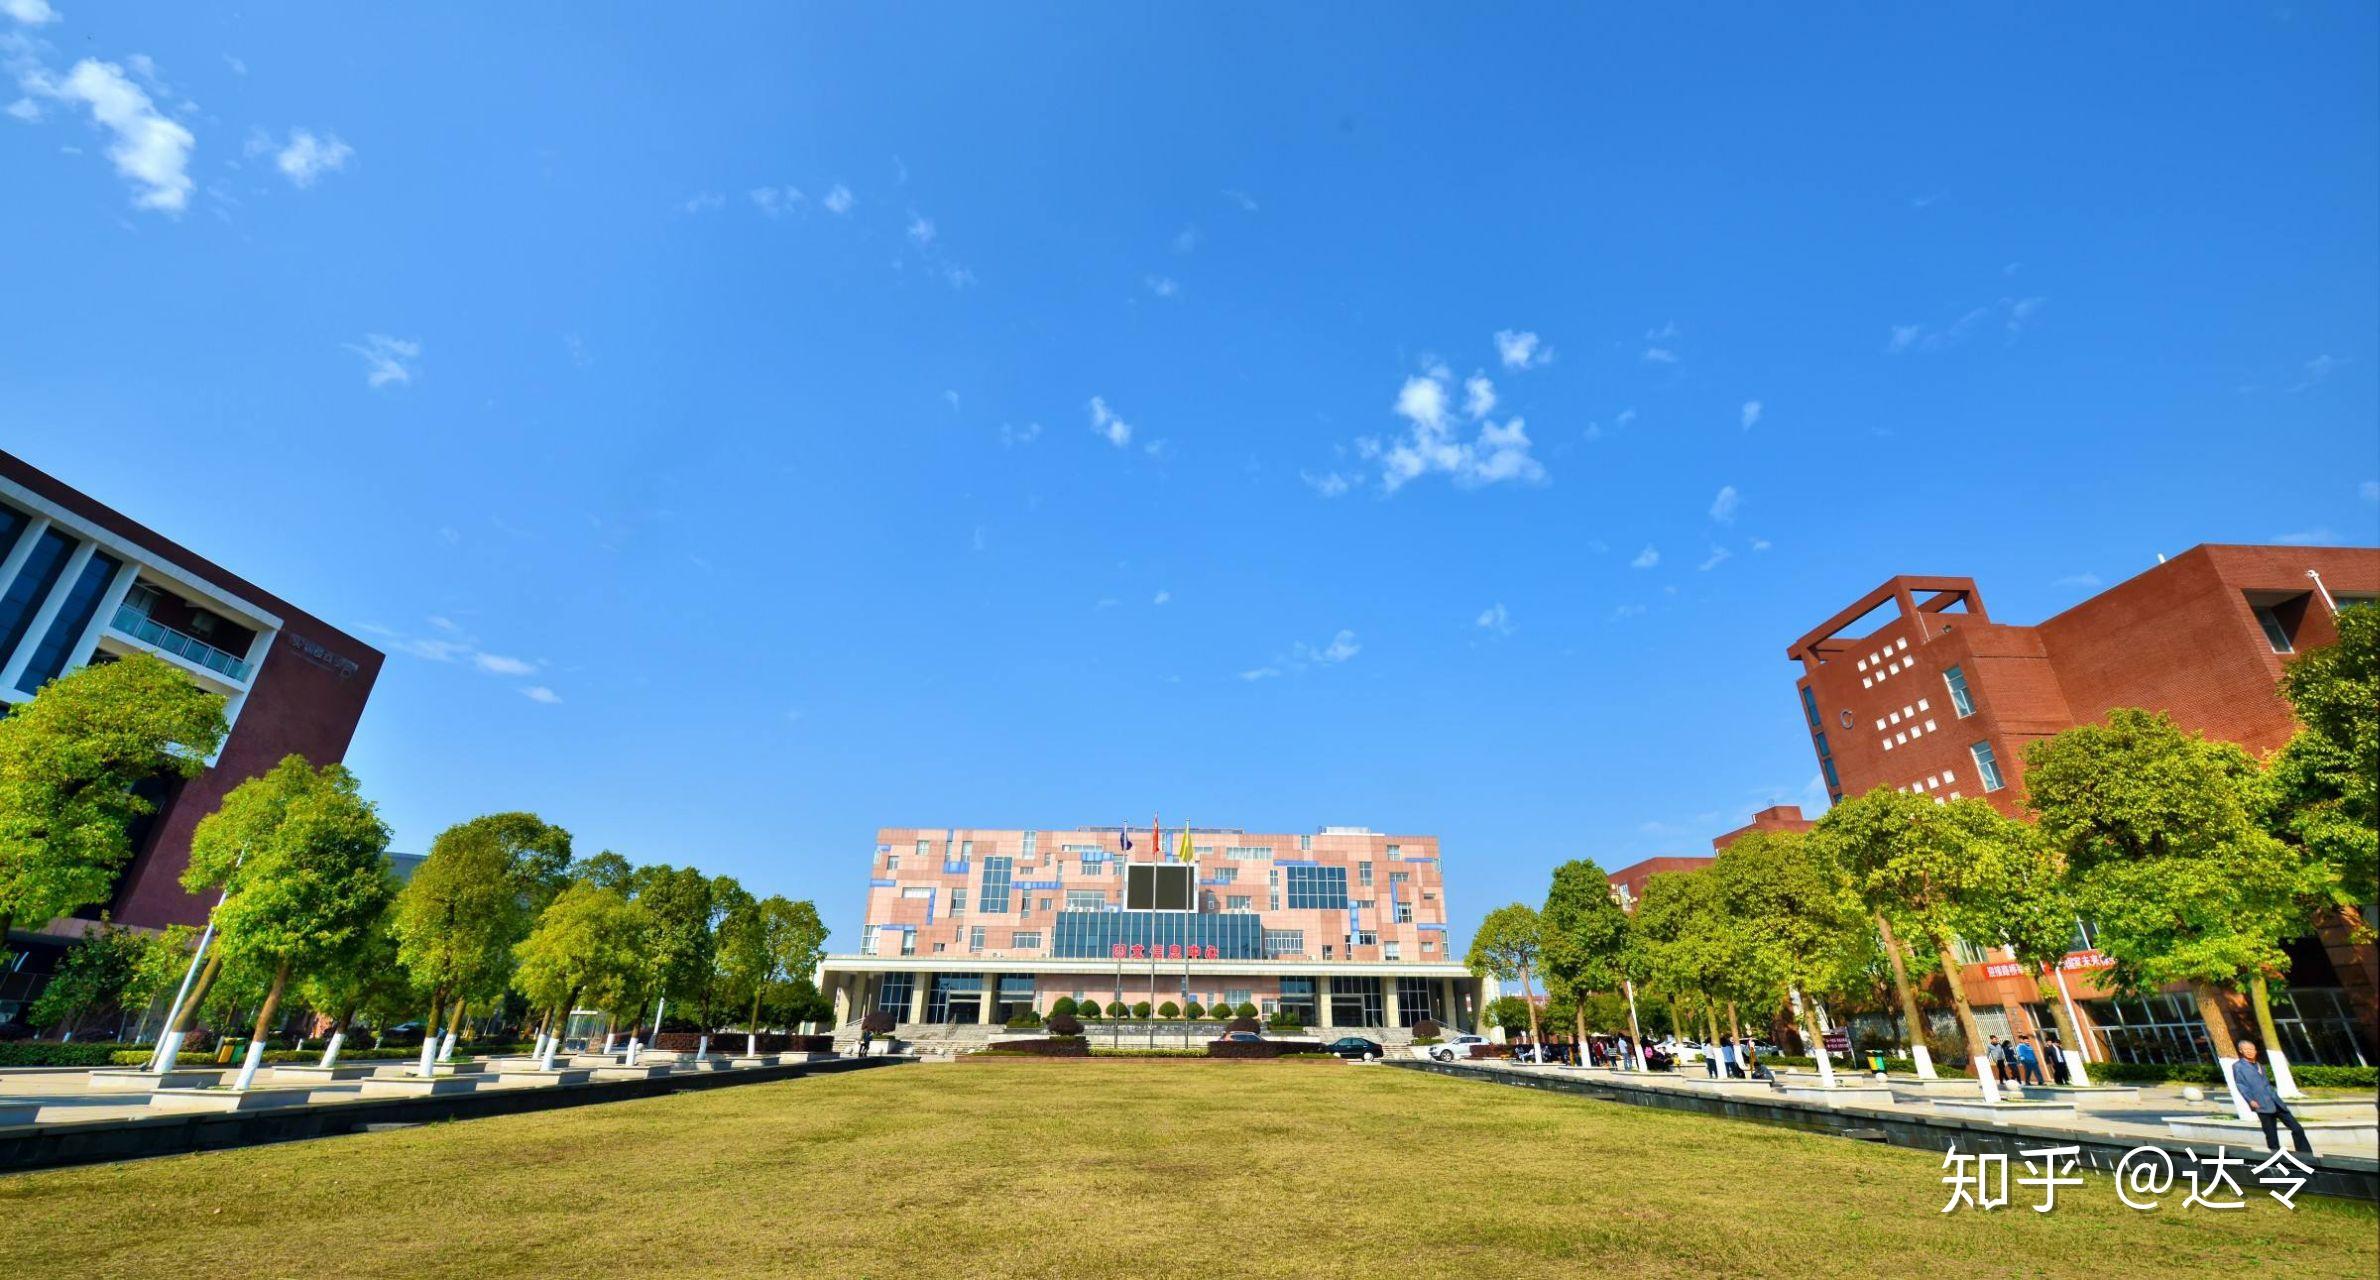 湖南交通职业技术学院的校园环境如何? 